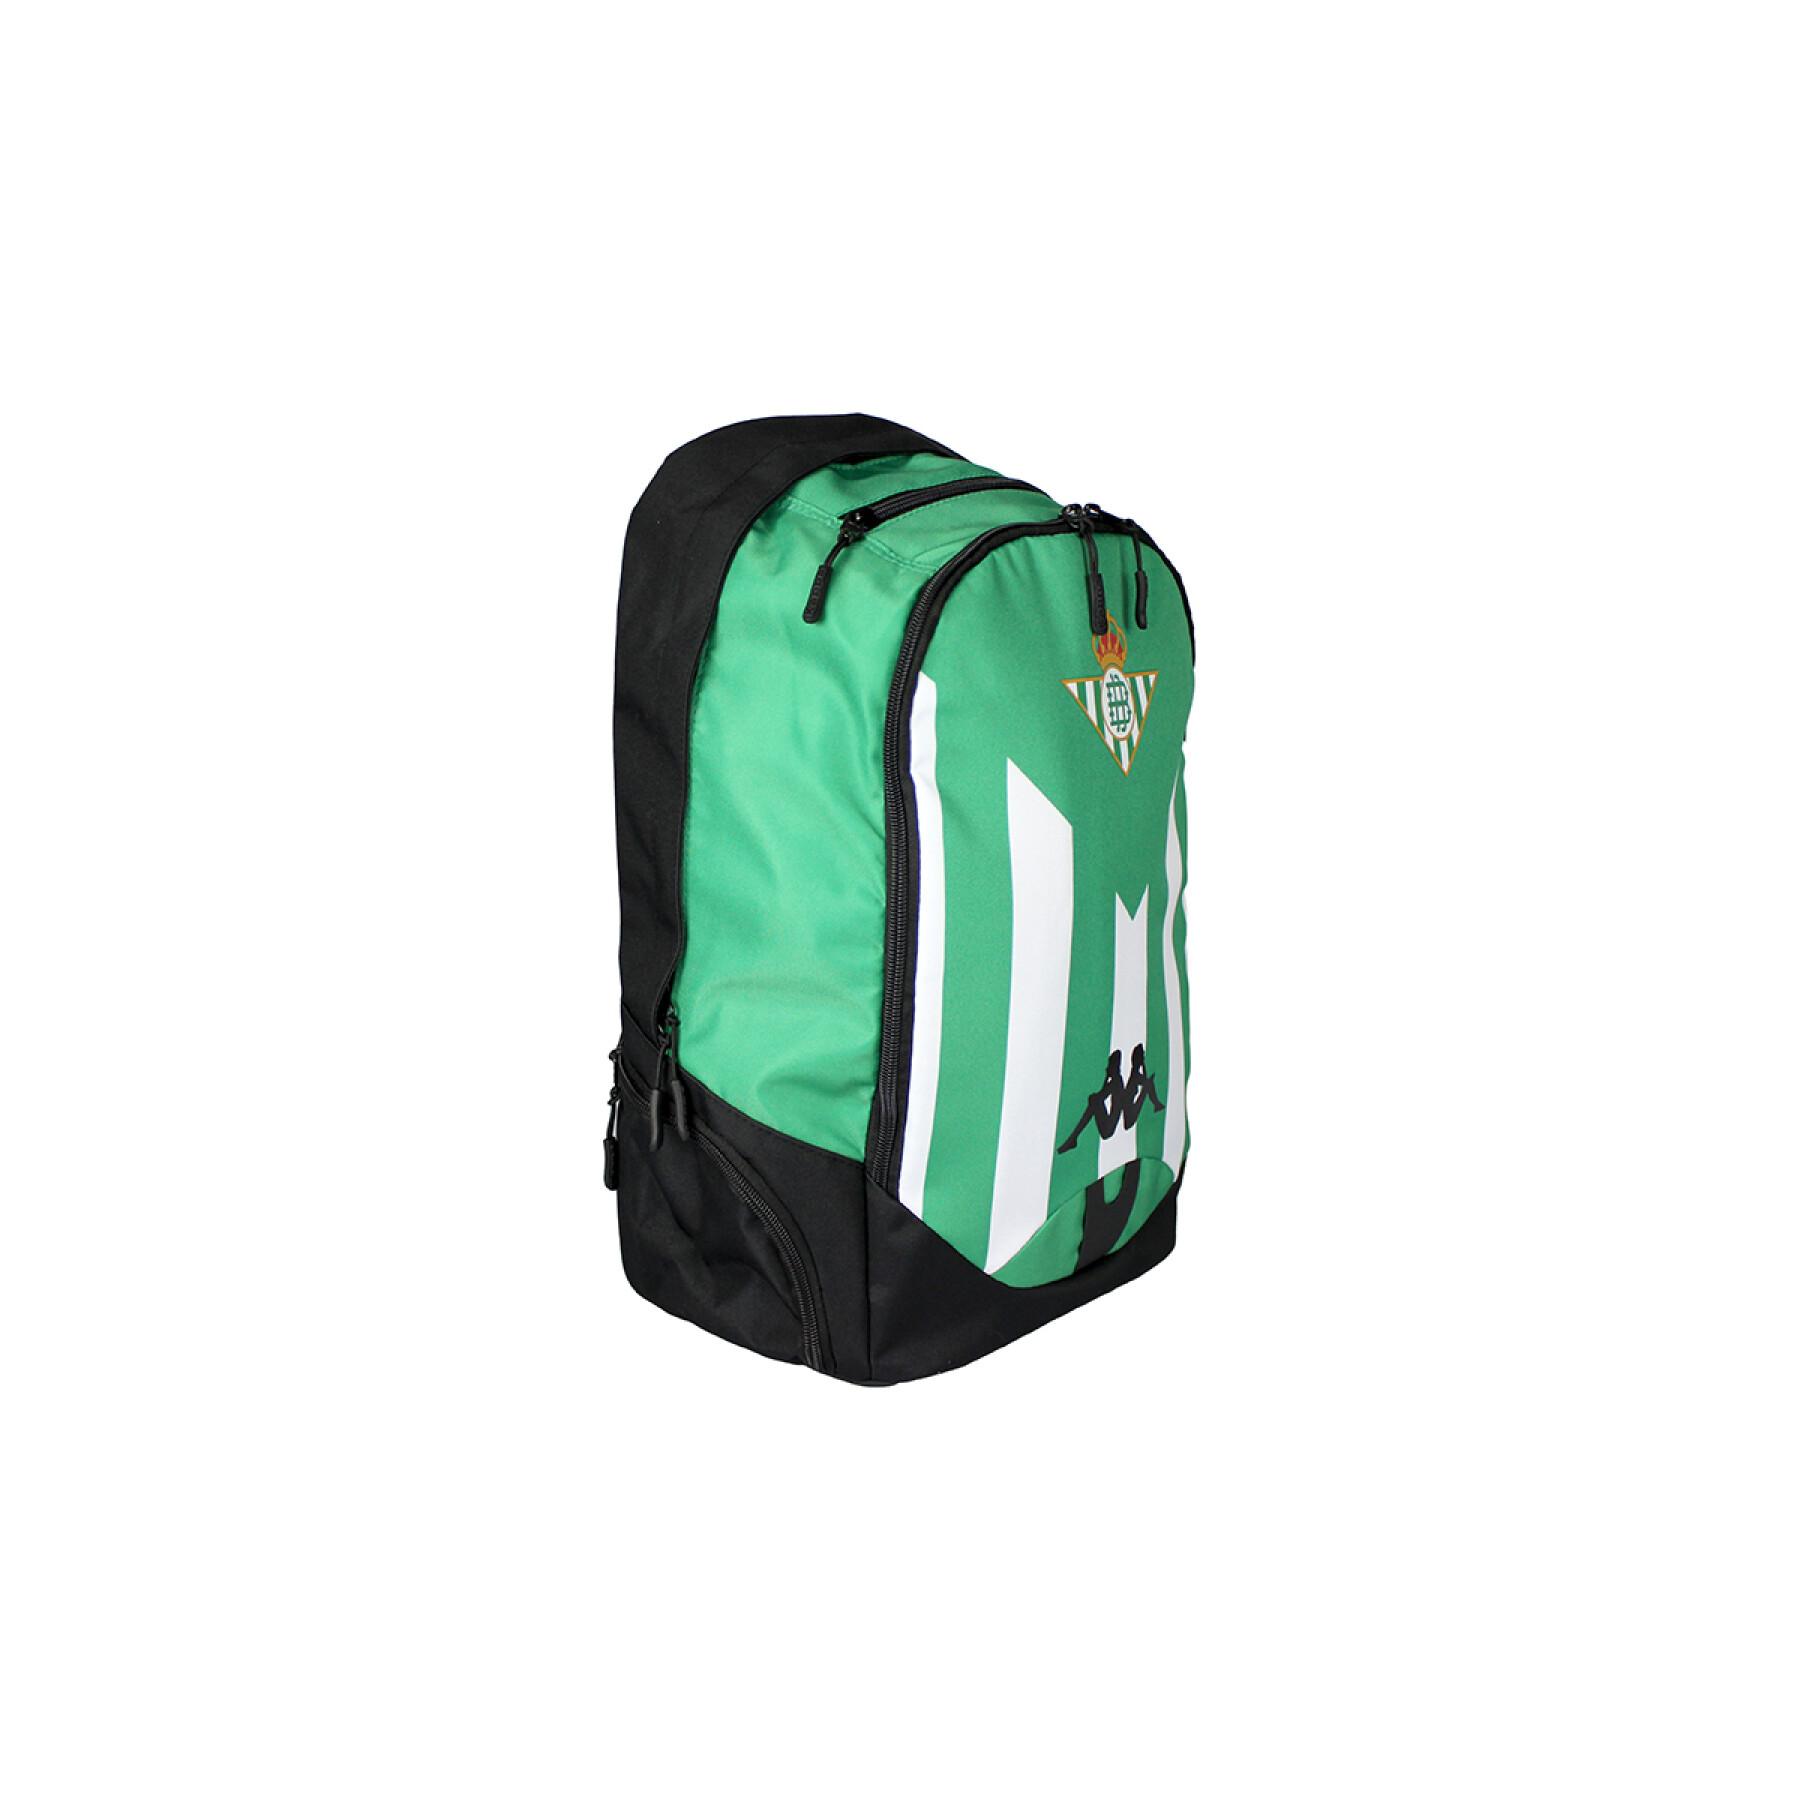 Backpack real Betis Seville 2021/22 apack 3